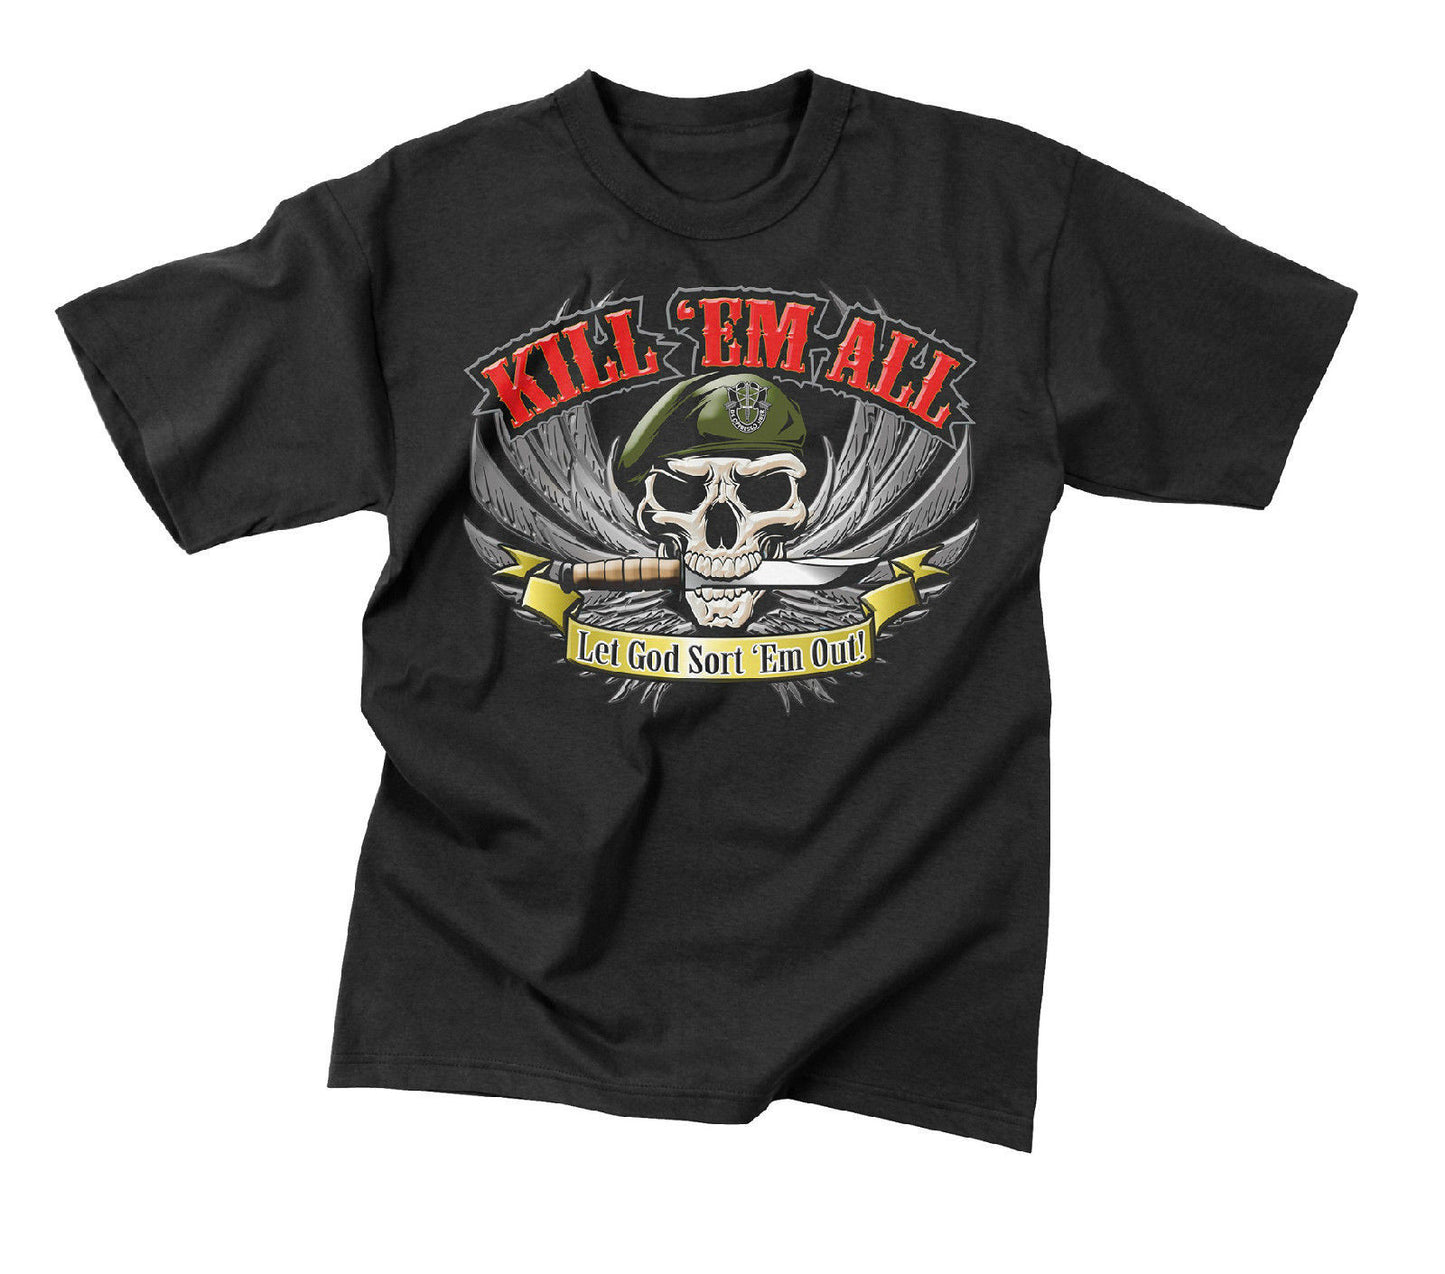 Rothco "Kill 'Em All" T - Shirt - Black